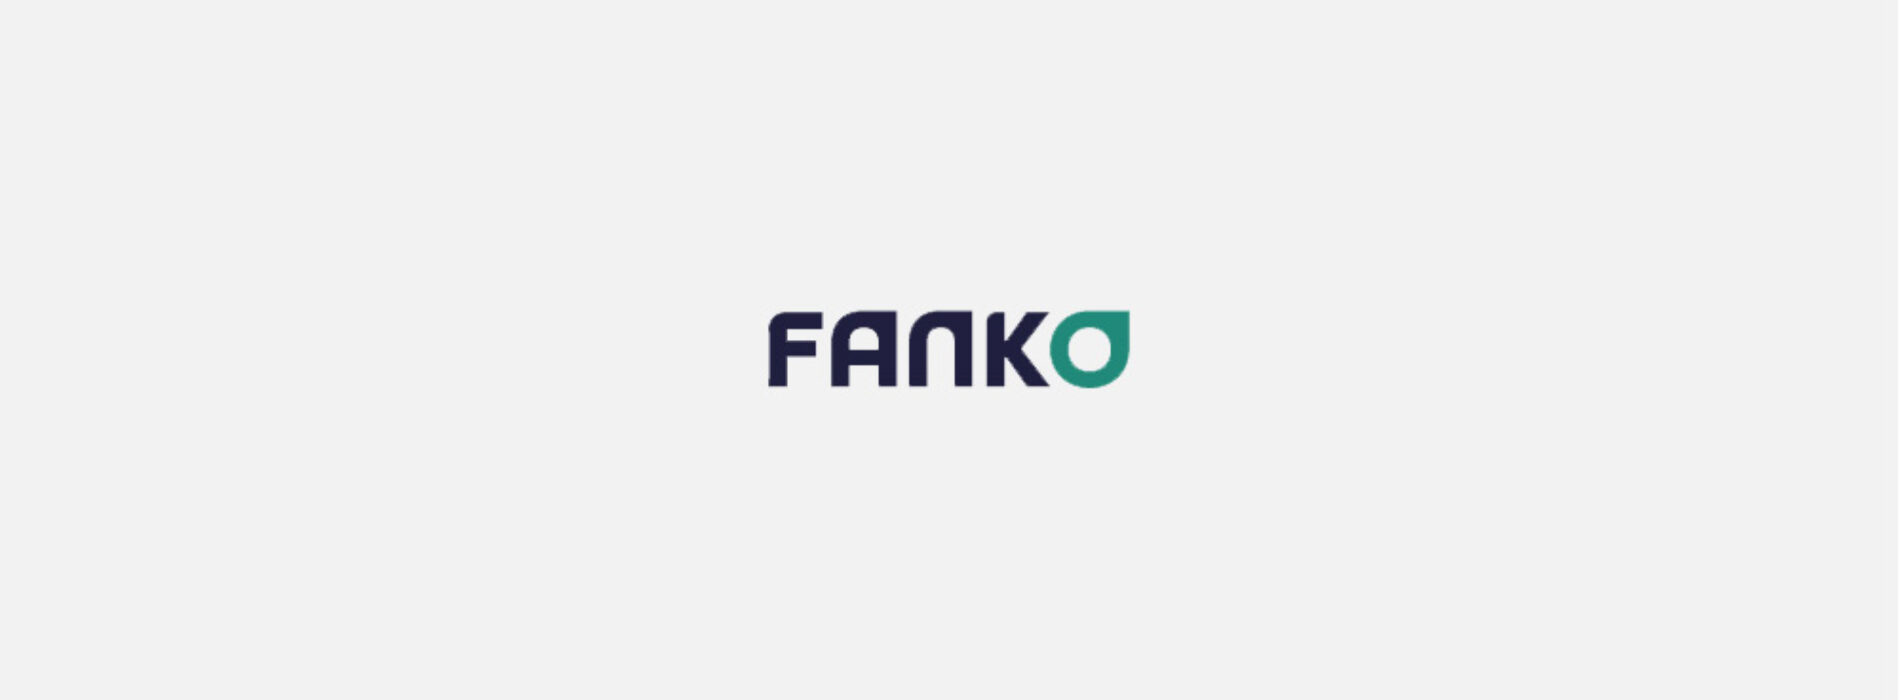 Fanko – sprawdziliśmy ofertę i opinie klientów